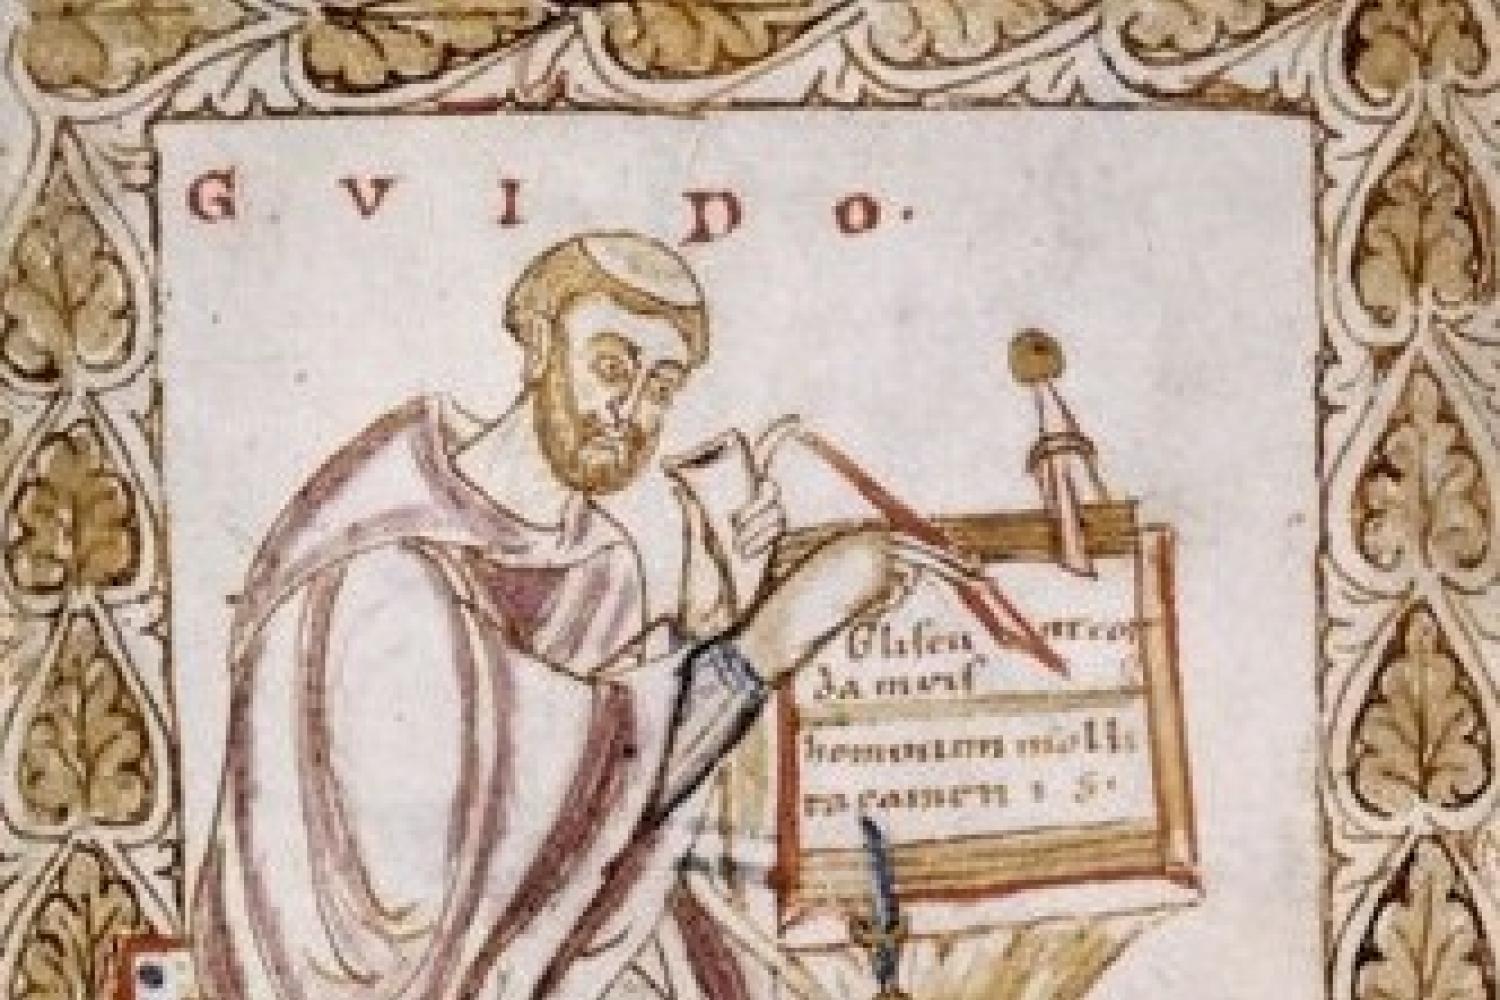 Guido of Arezzo